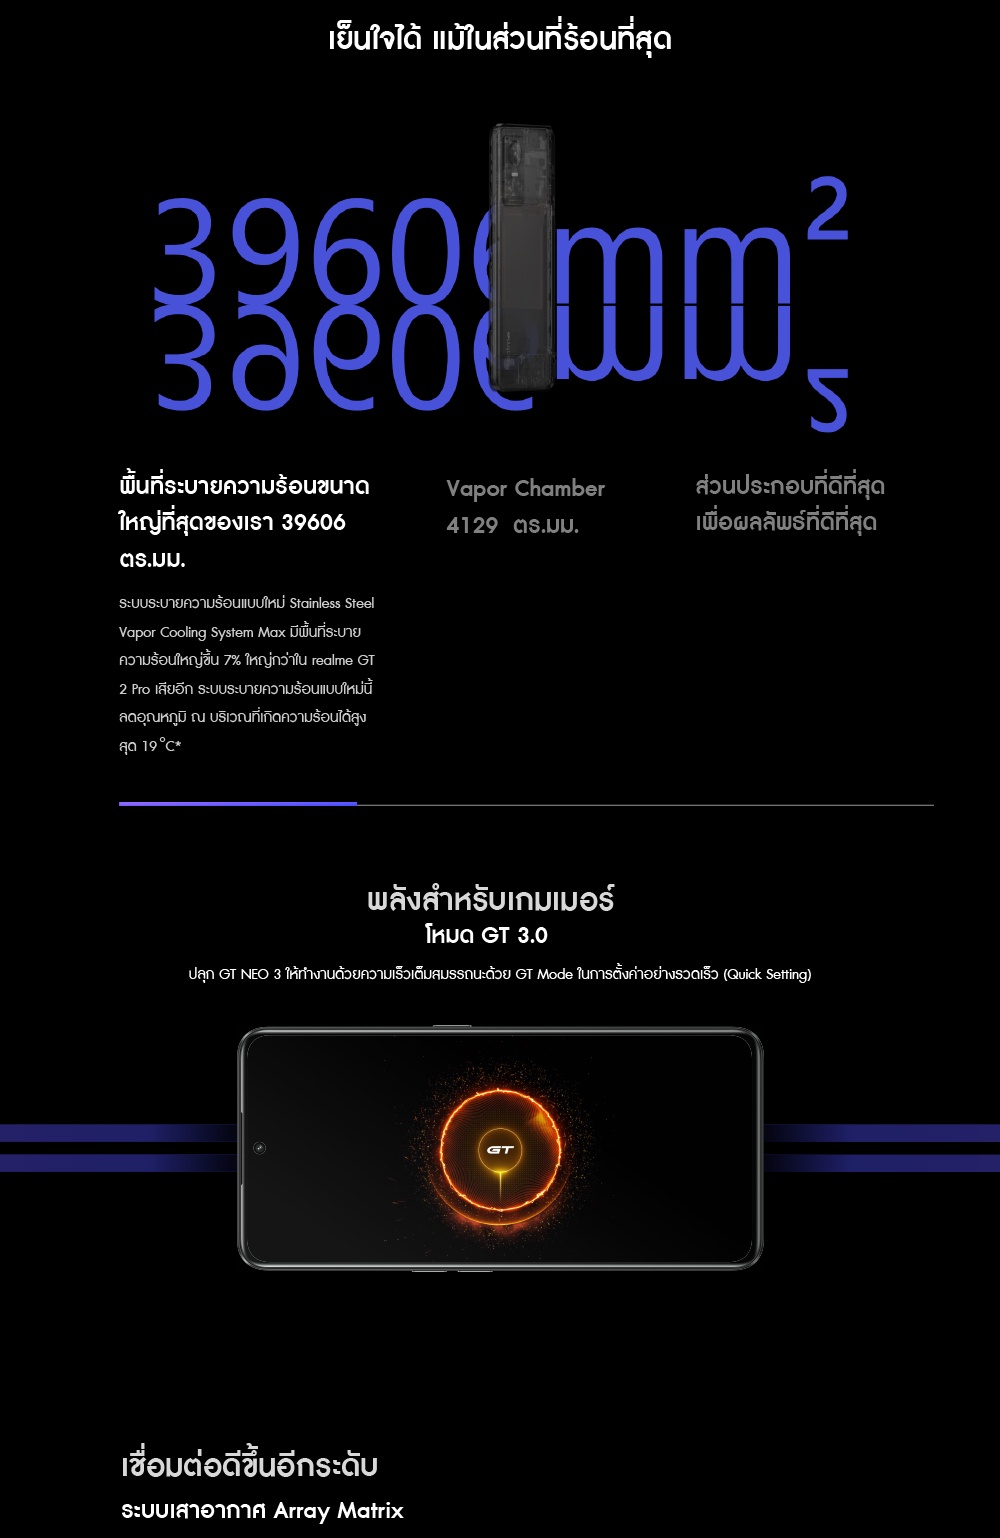 ภาพอธิบายเพิ่มเติมของ [New Arrival] Realme GT NEO 3 (12+256GB) | Dimensity 8100 5G 6.7 นิ้ว 120Hz | ชาร์จไว 80W/150W พร้อมส่งจากไทย ของแท้ 100%